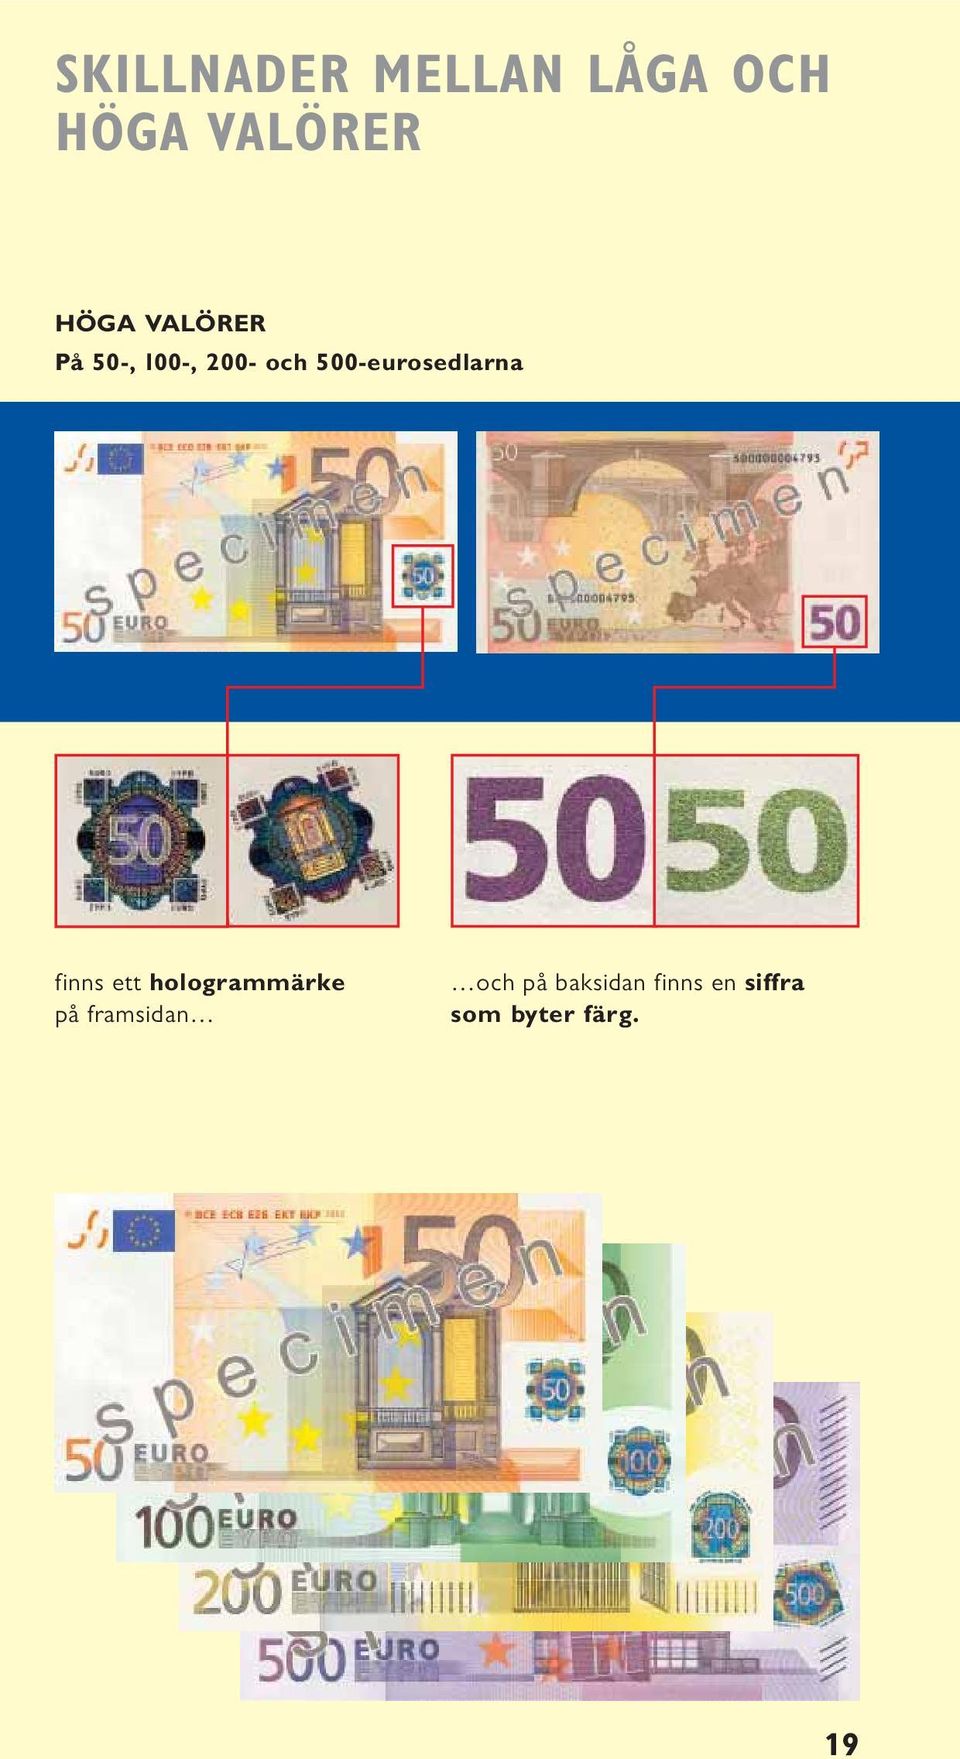 500-eurosedlarna finns ett hologrammärke på